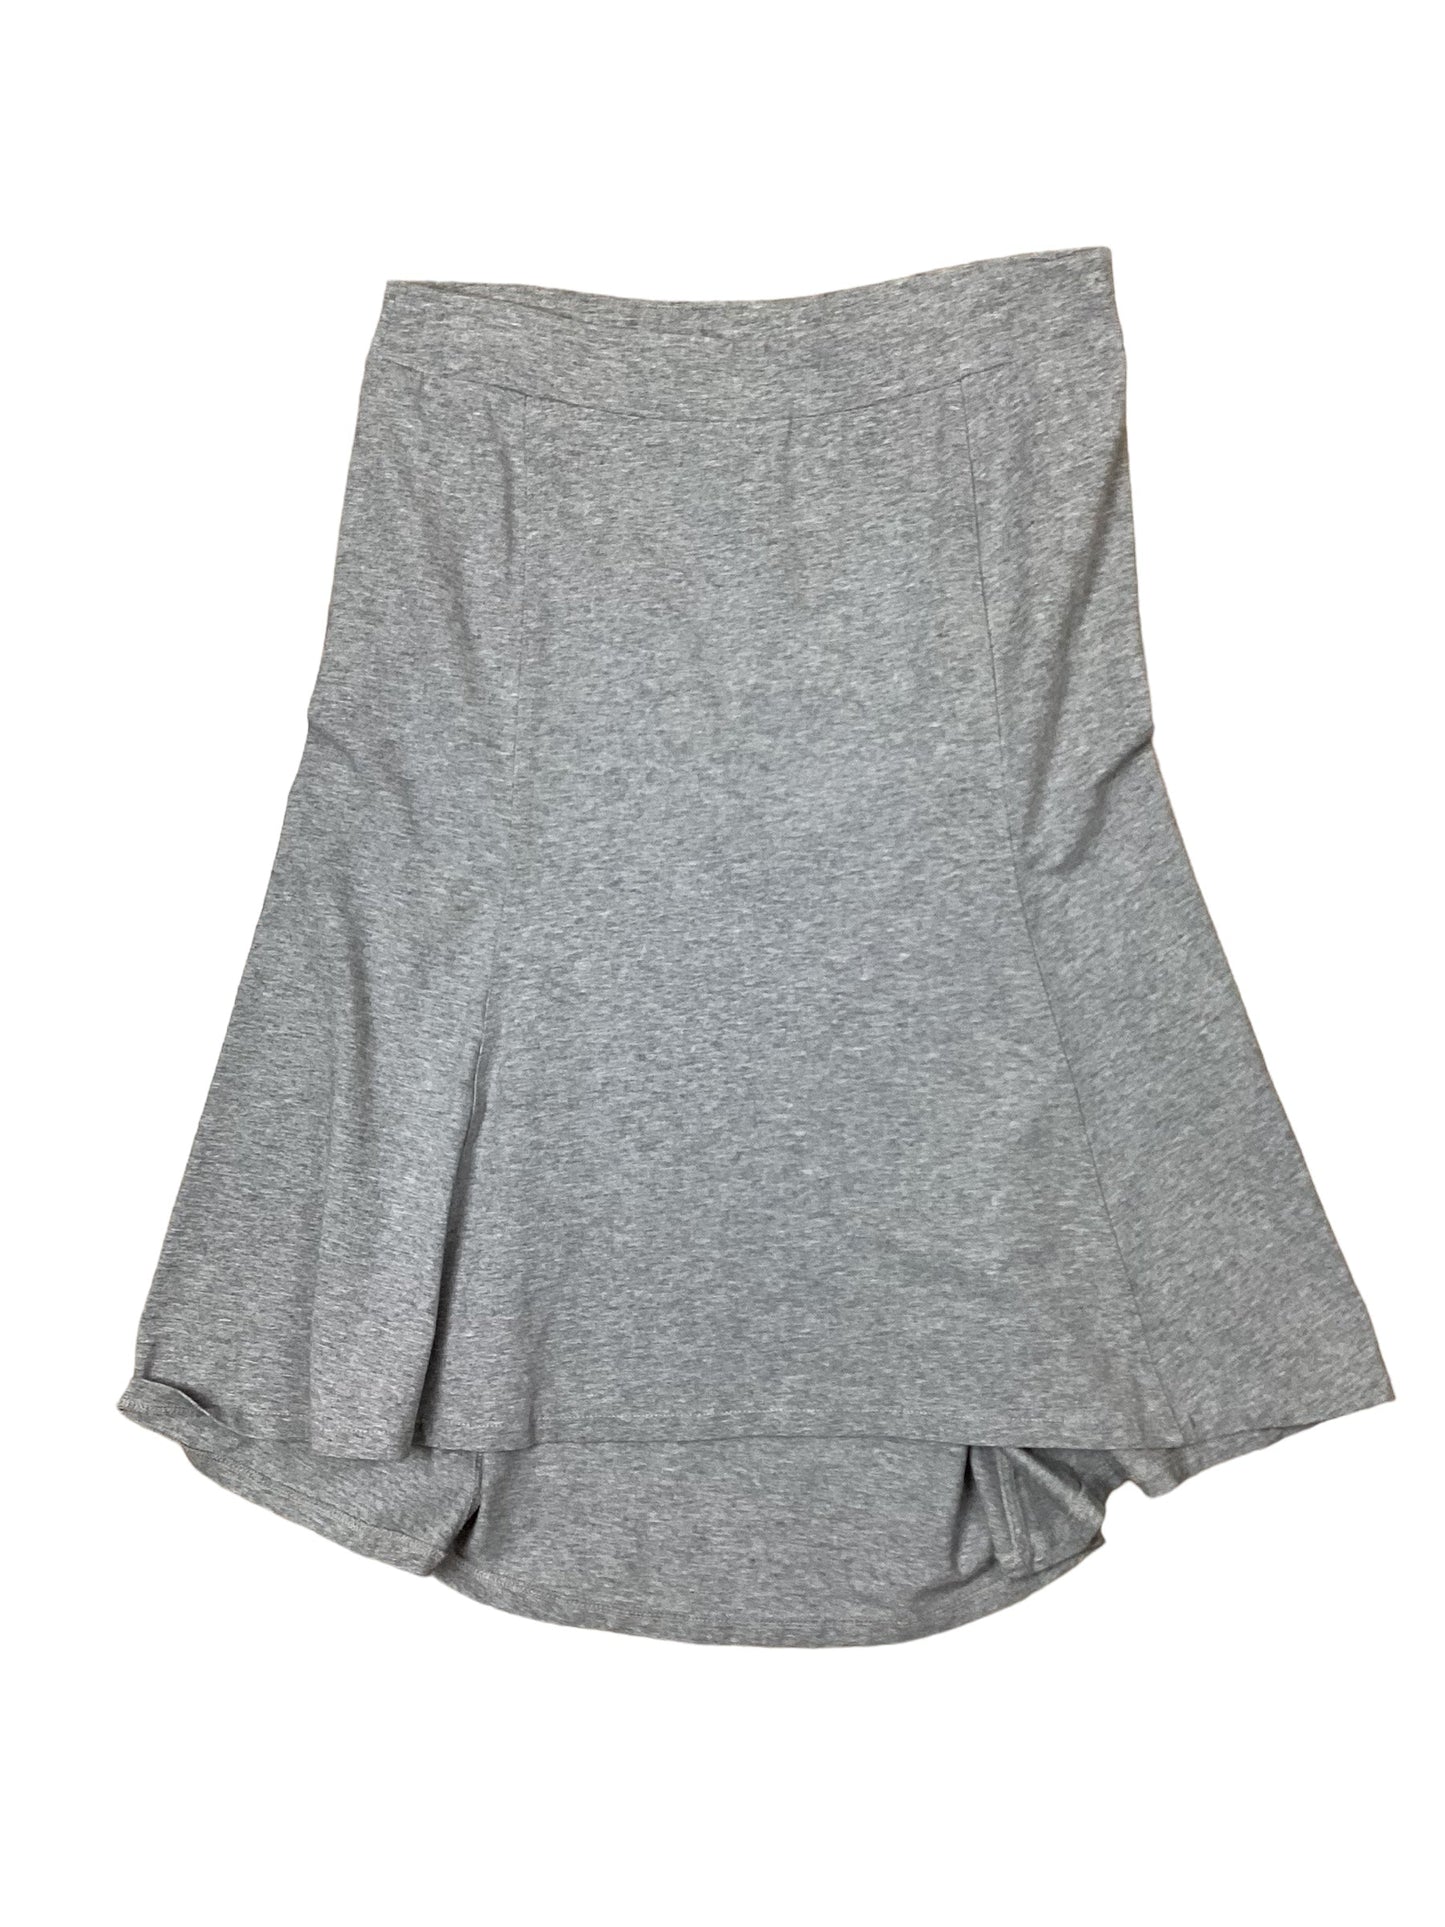 Grey Skirt Midi J. Jill, Size 10